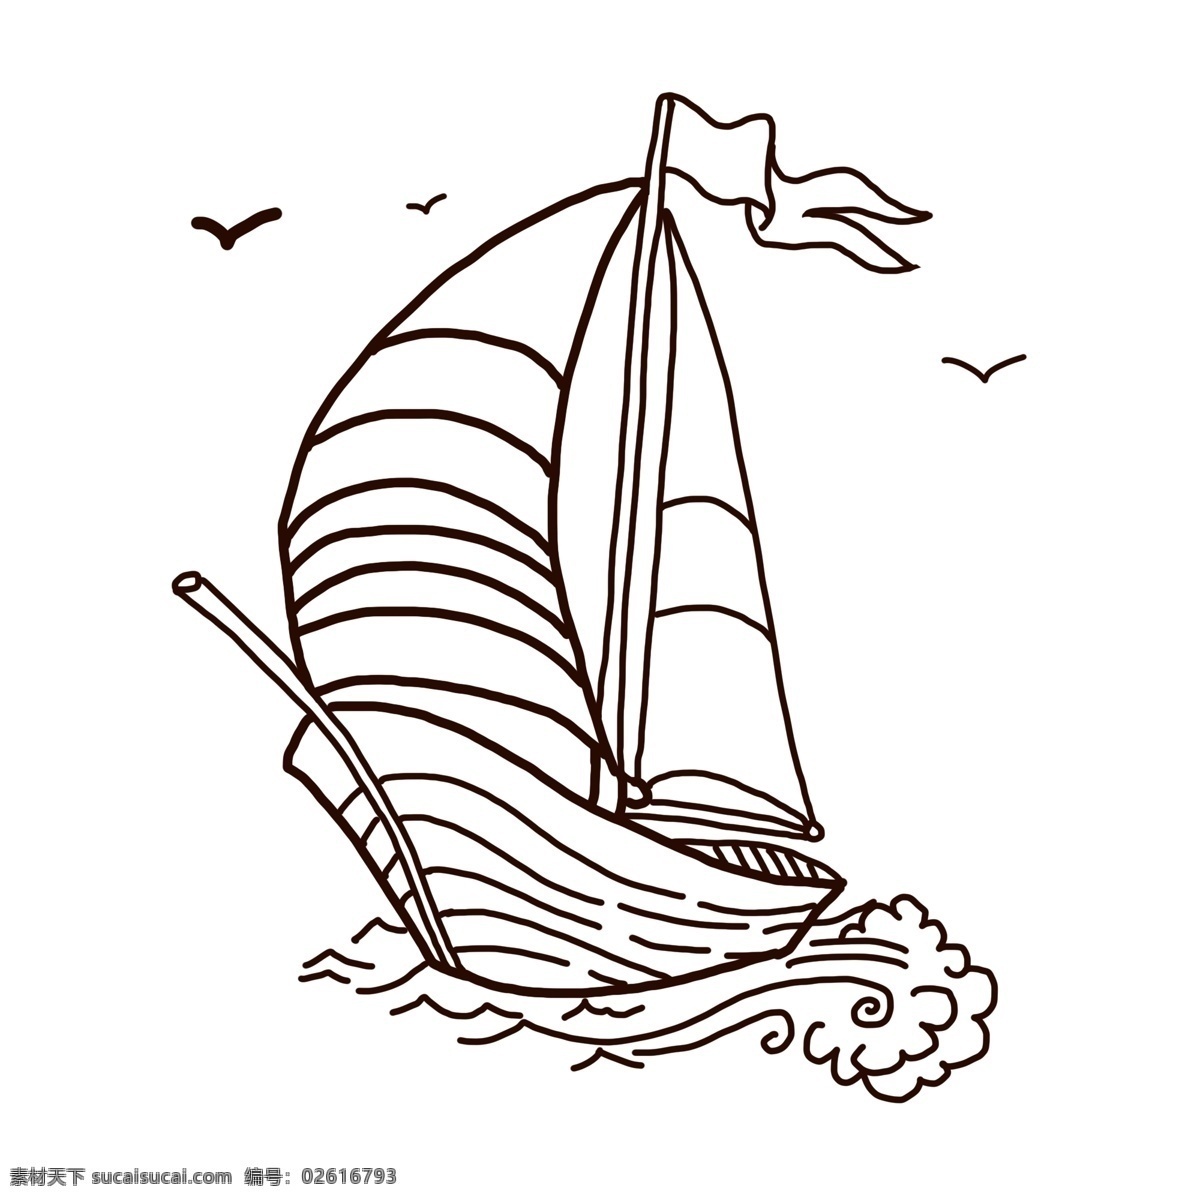 手绘 线条 卡通 帆船 一帆风顺 吉祥 祝福 碧海 蓝天 乘船 船帆 水上设施 交通工具